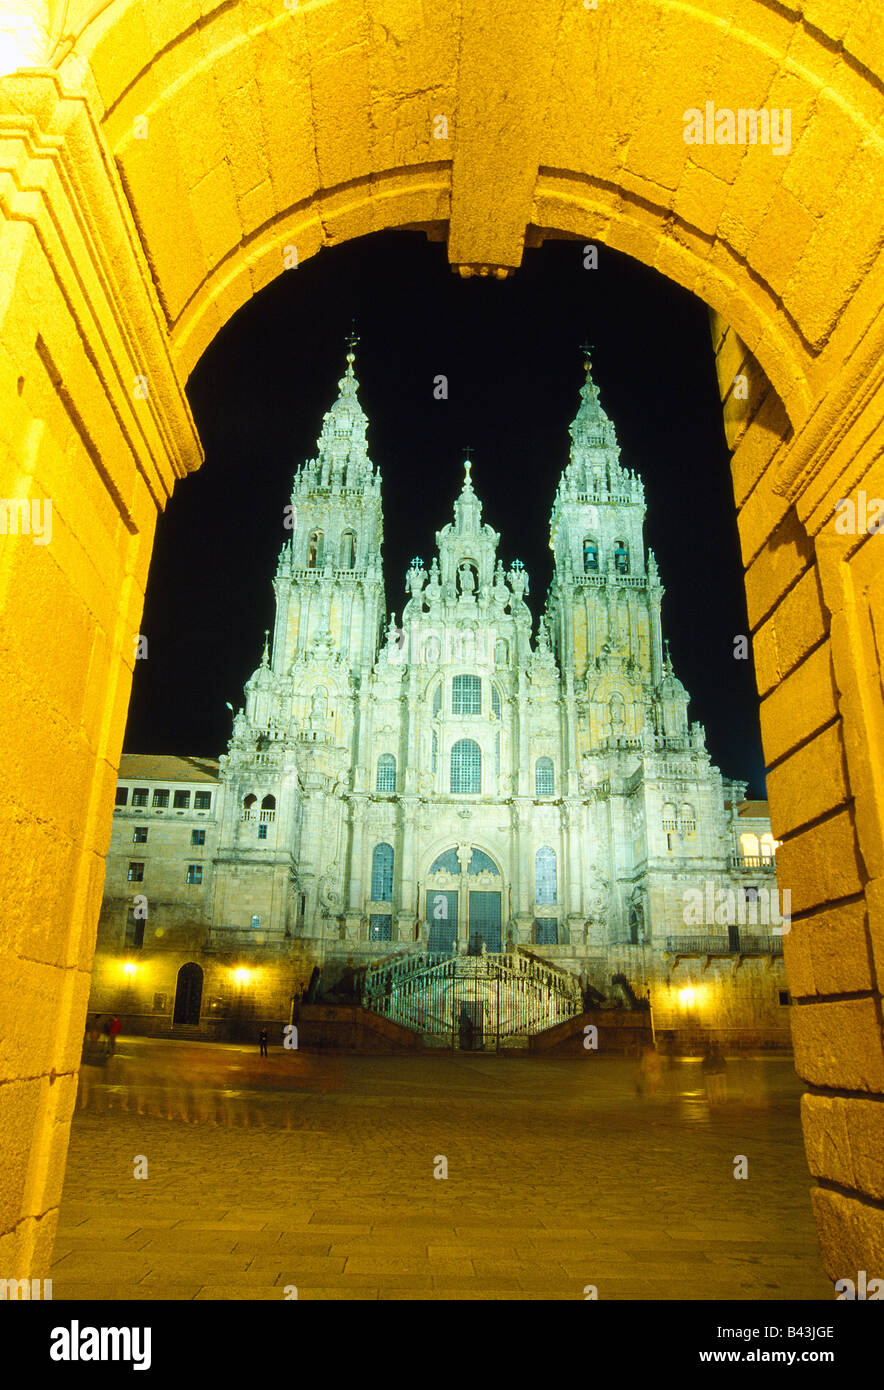 Cathedral. Night view. Santiago de Compostela. La Coruña province. Galicia. Spain. Stock Photo